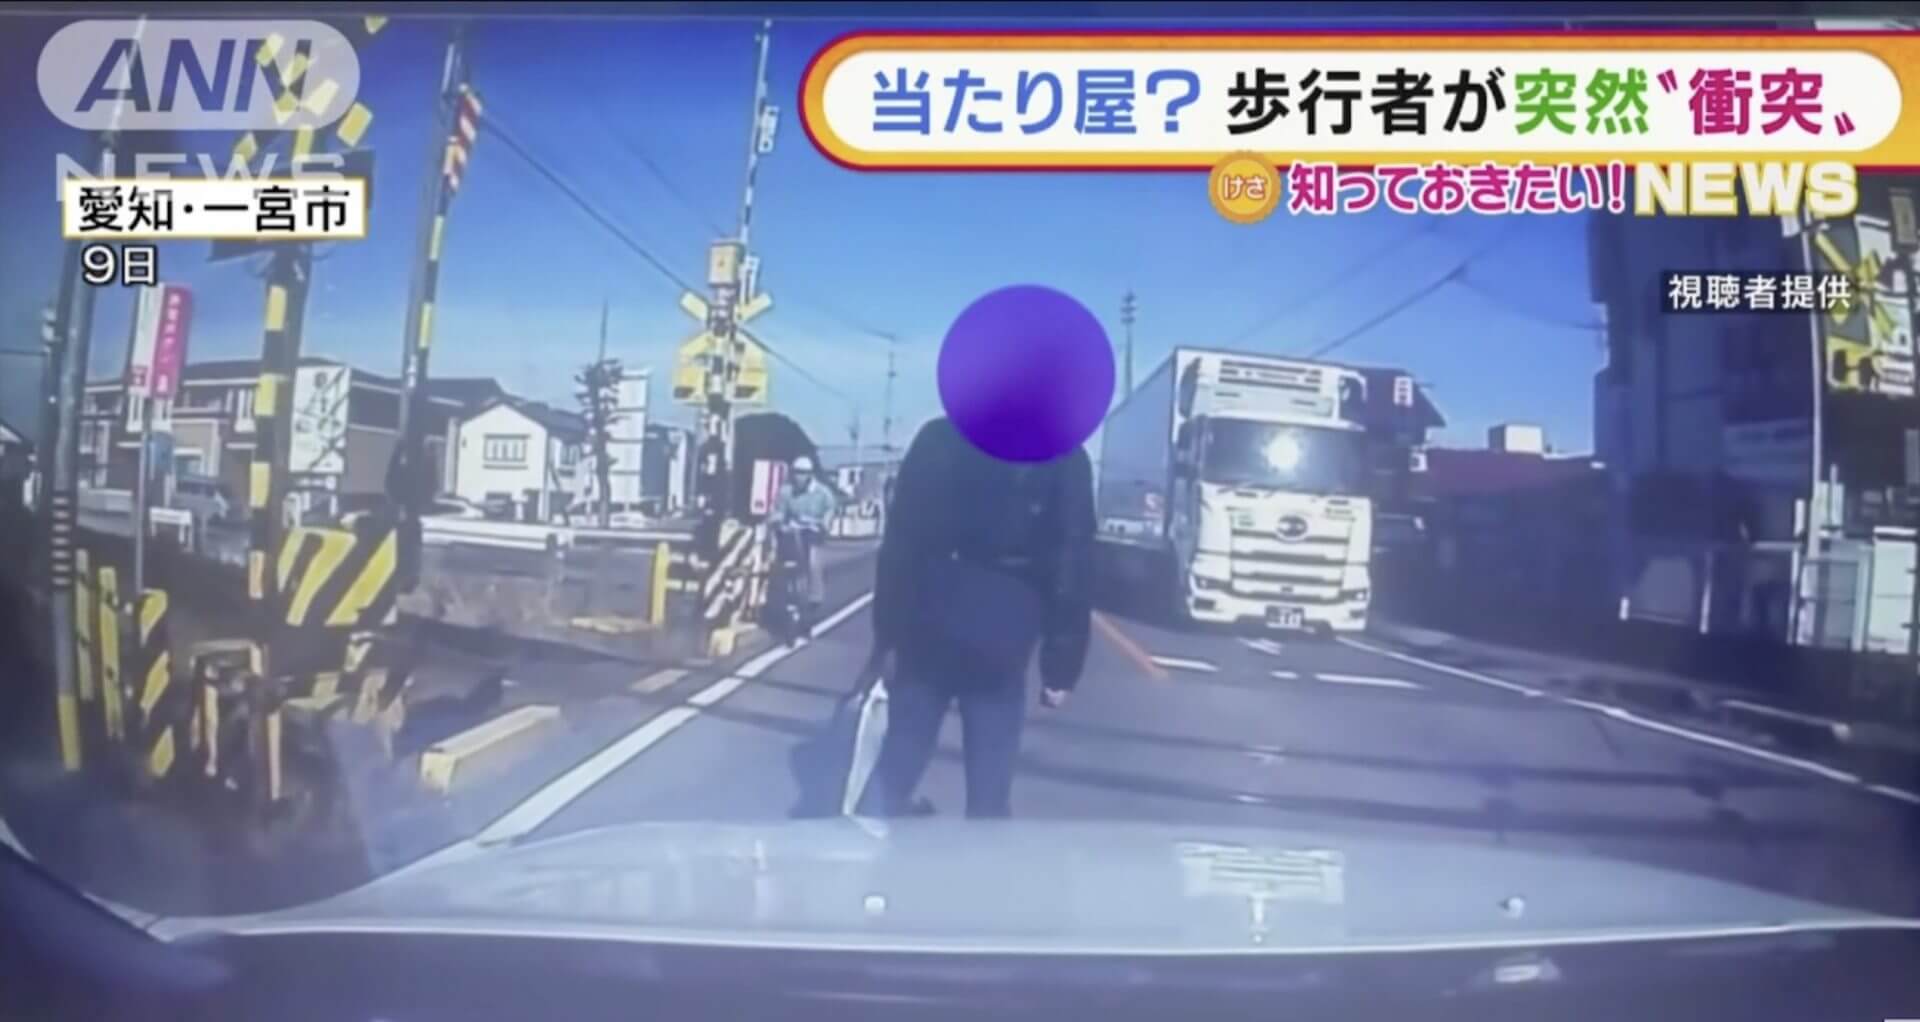 Atariya ataca em cruzamento ferroviário no Japão 